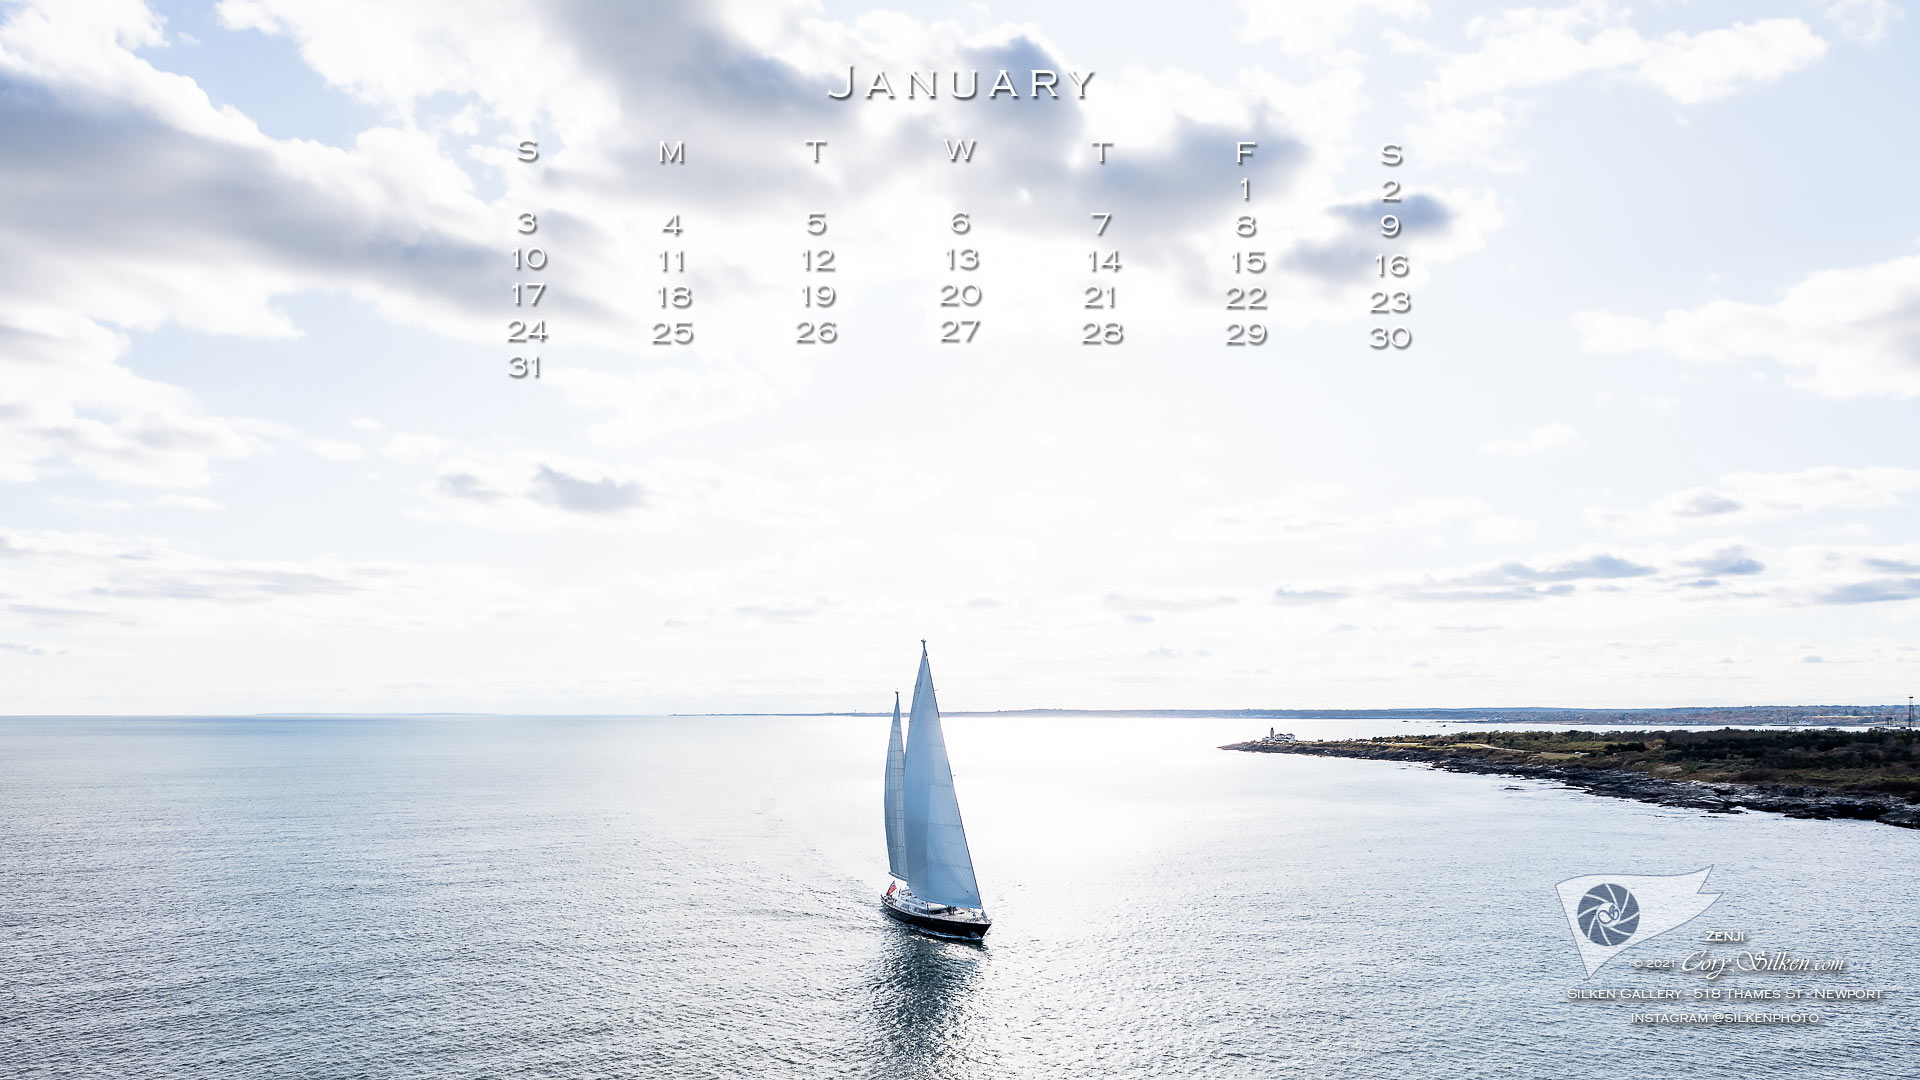 Sailing Calendar: January 2021 >> Scuttlebutt Sailing News
